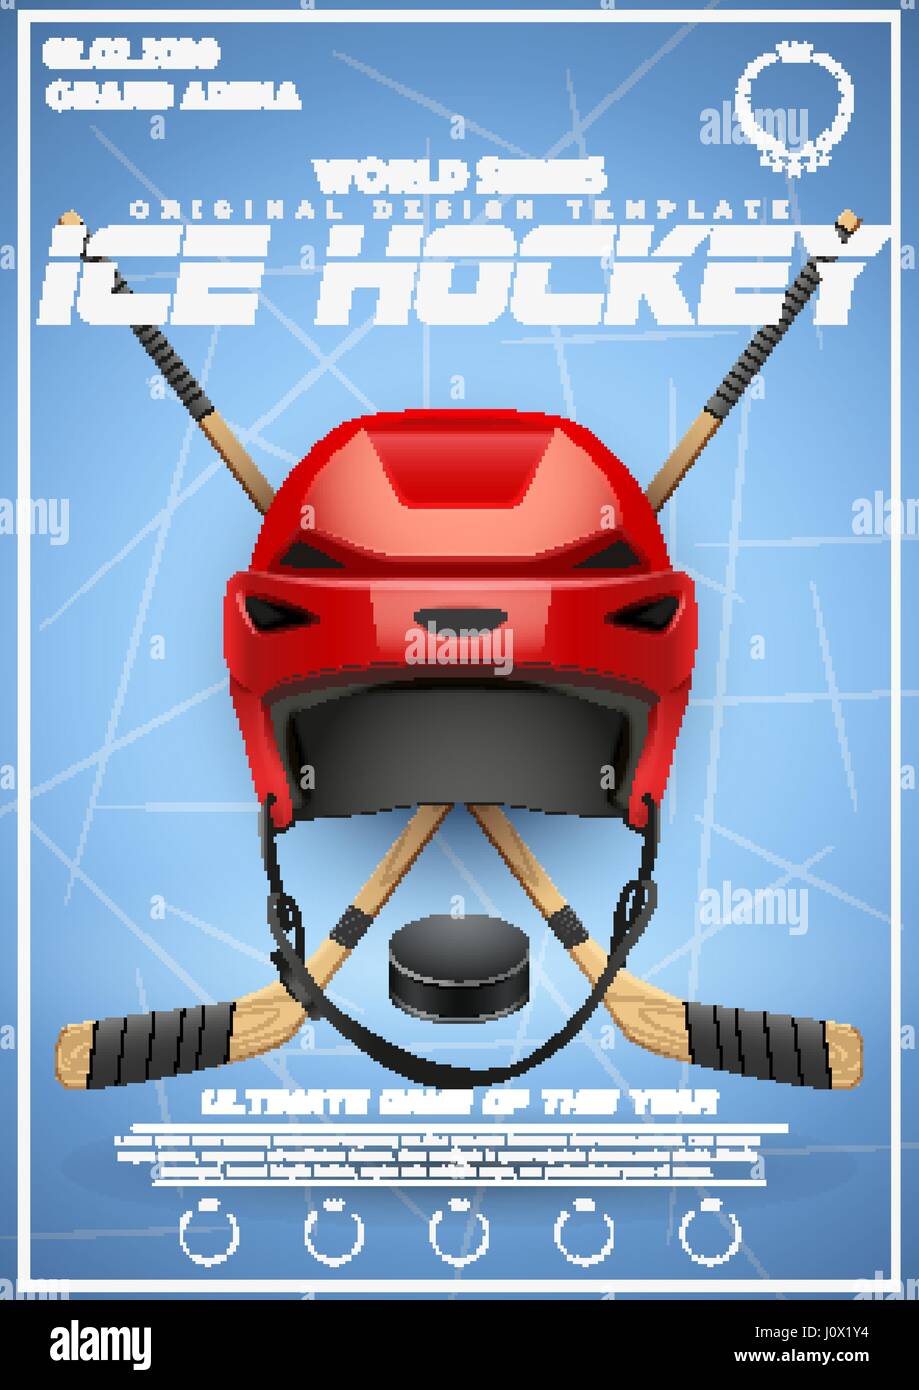 Modello di poster di Ice hockey tournament Illustrazione Vettoriale